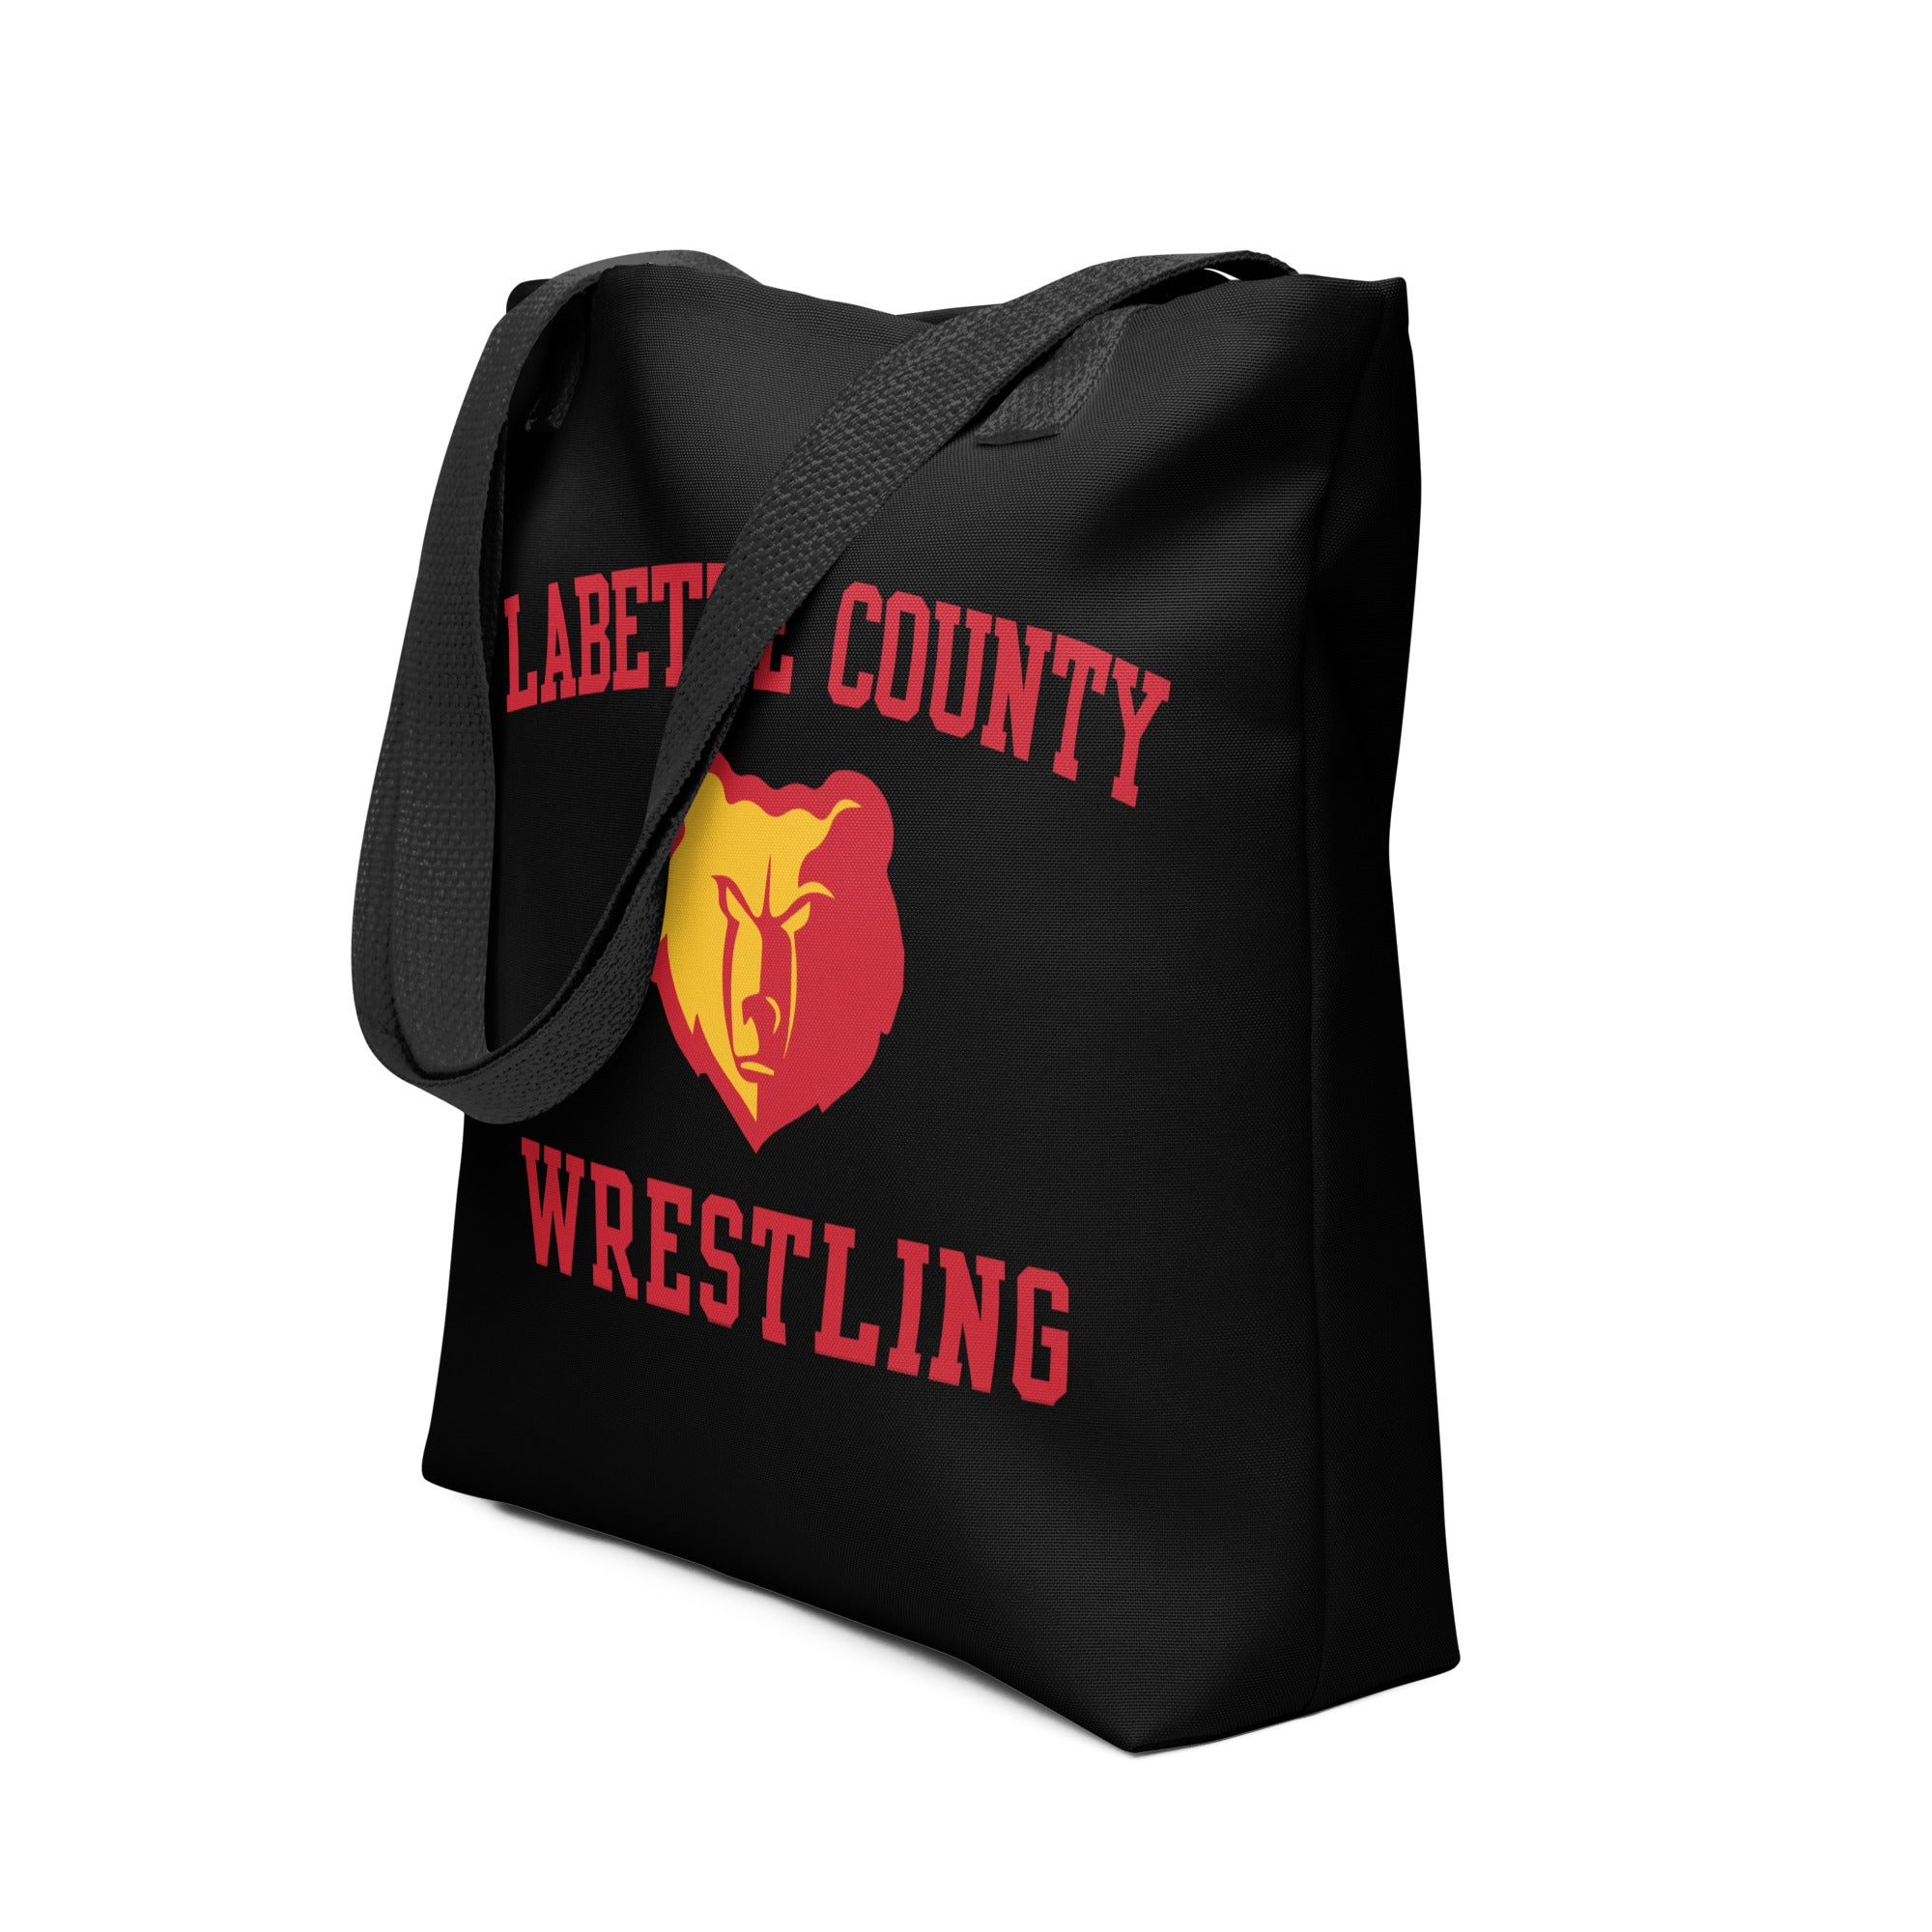 Labette County Wrestling All Over Print Tote